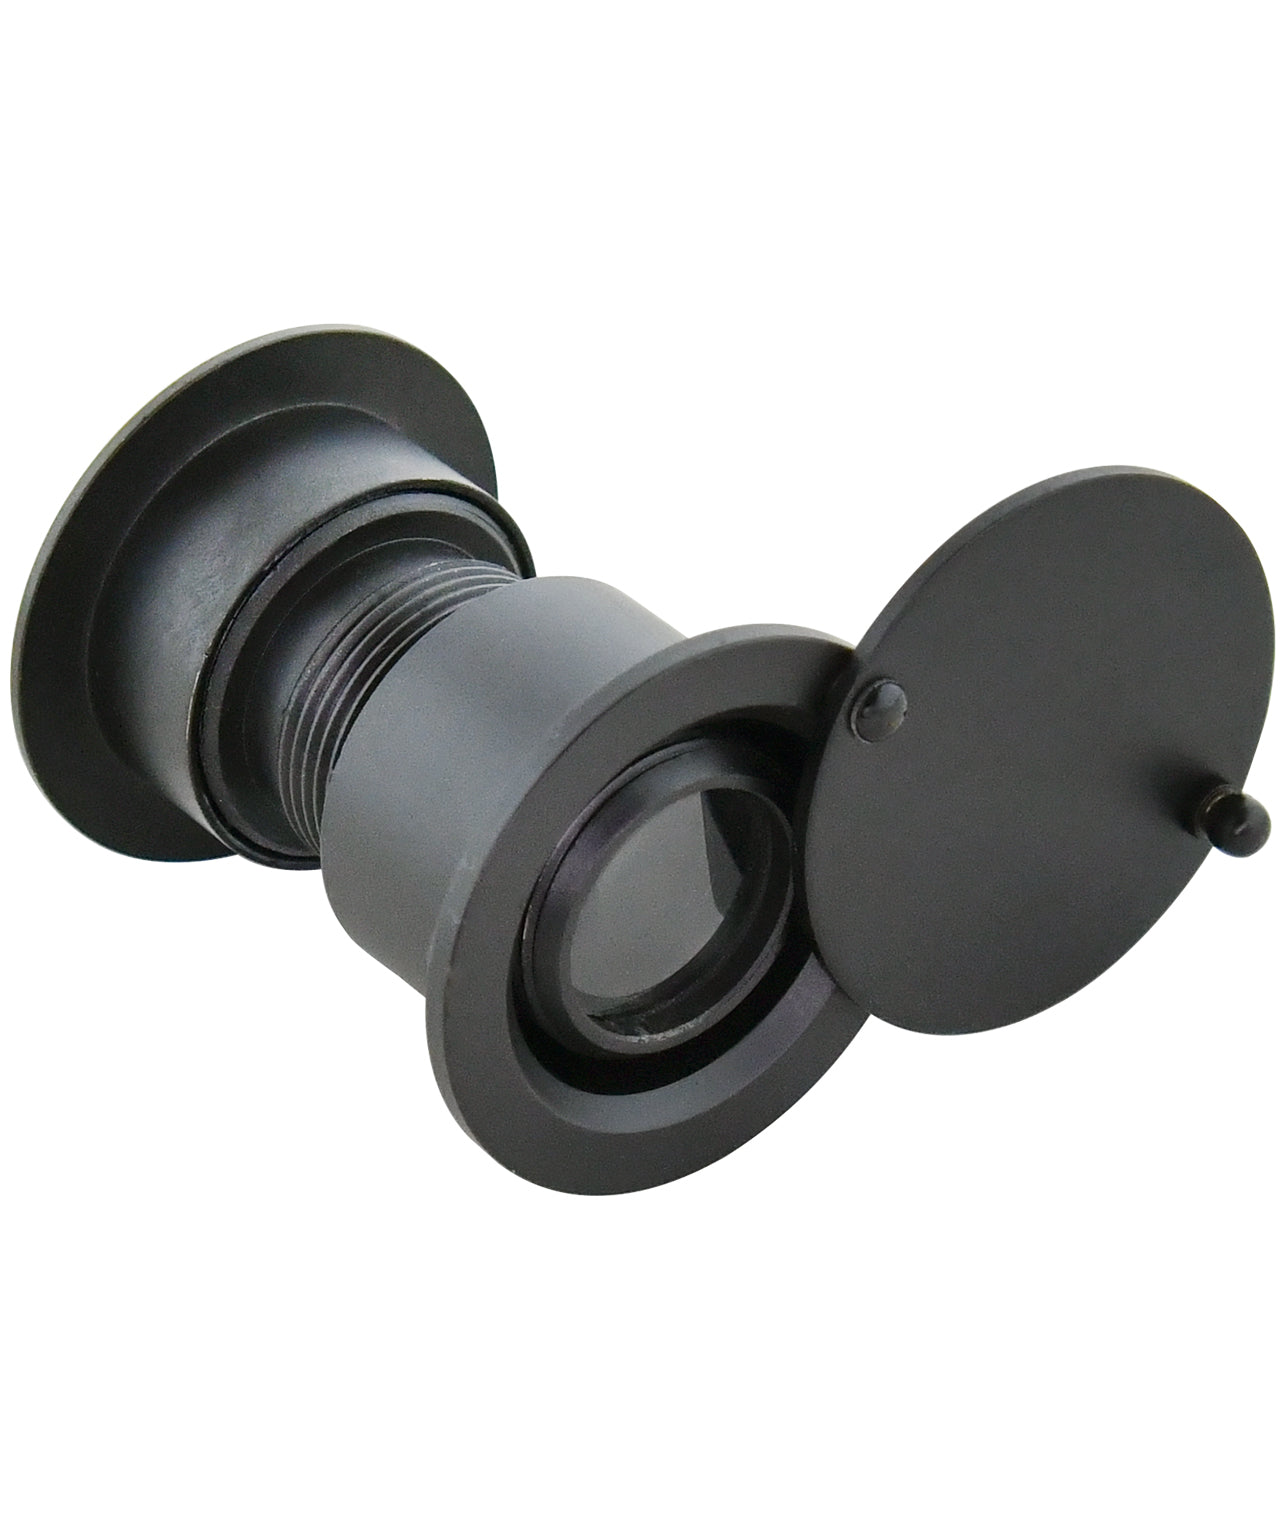 Solid Brass Security Peek Peepholes for Front Door - Black